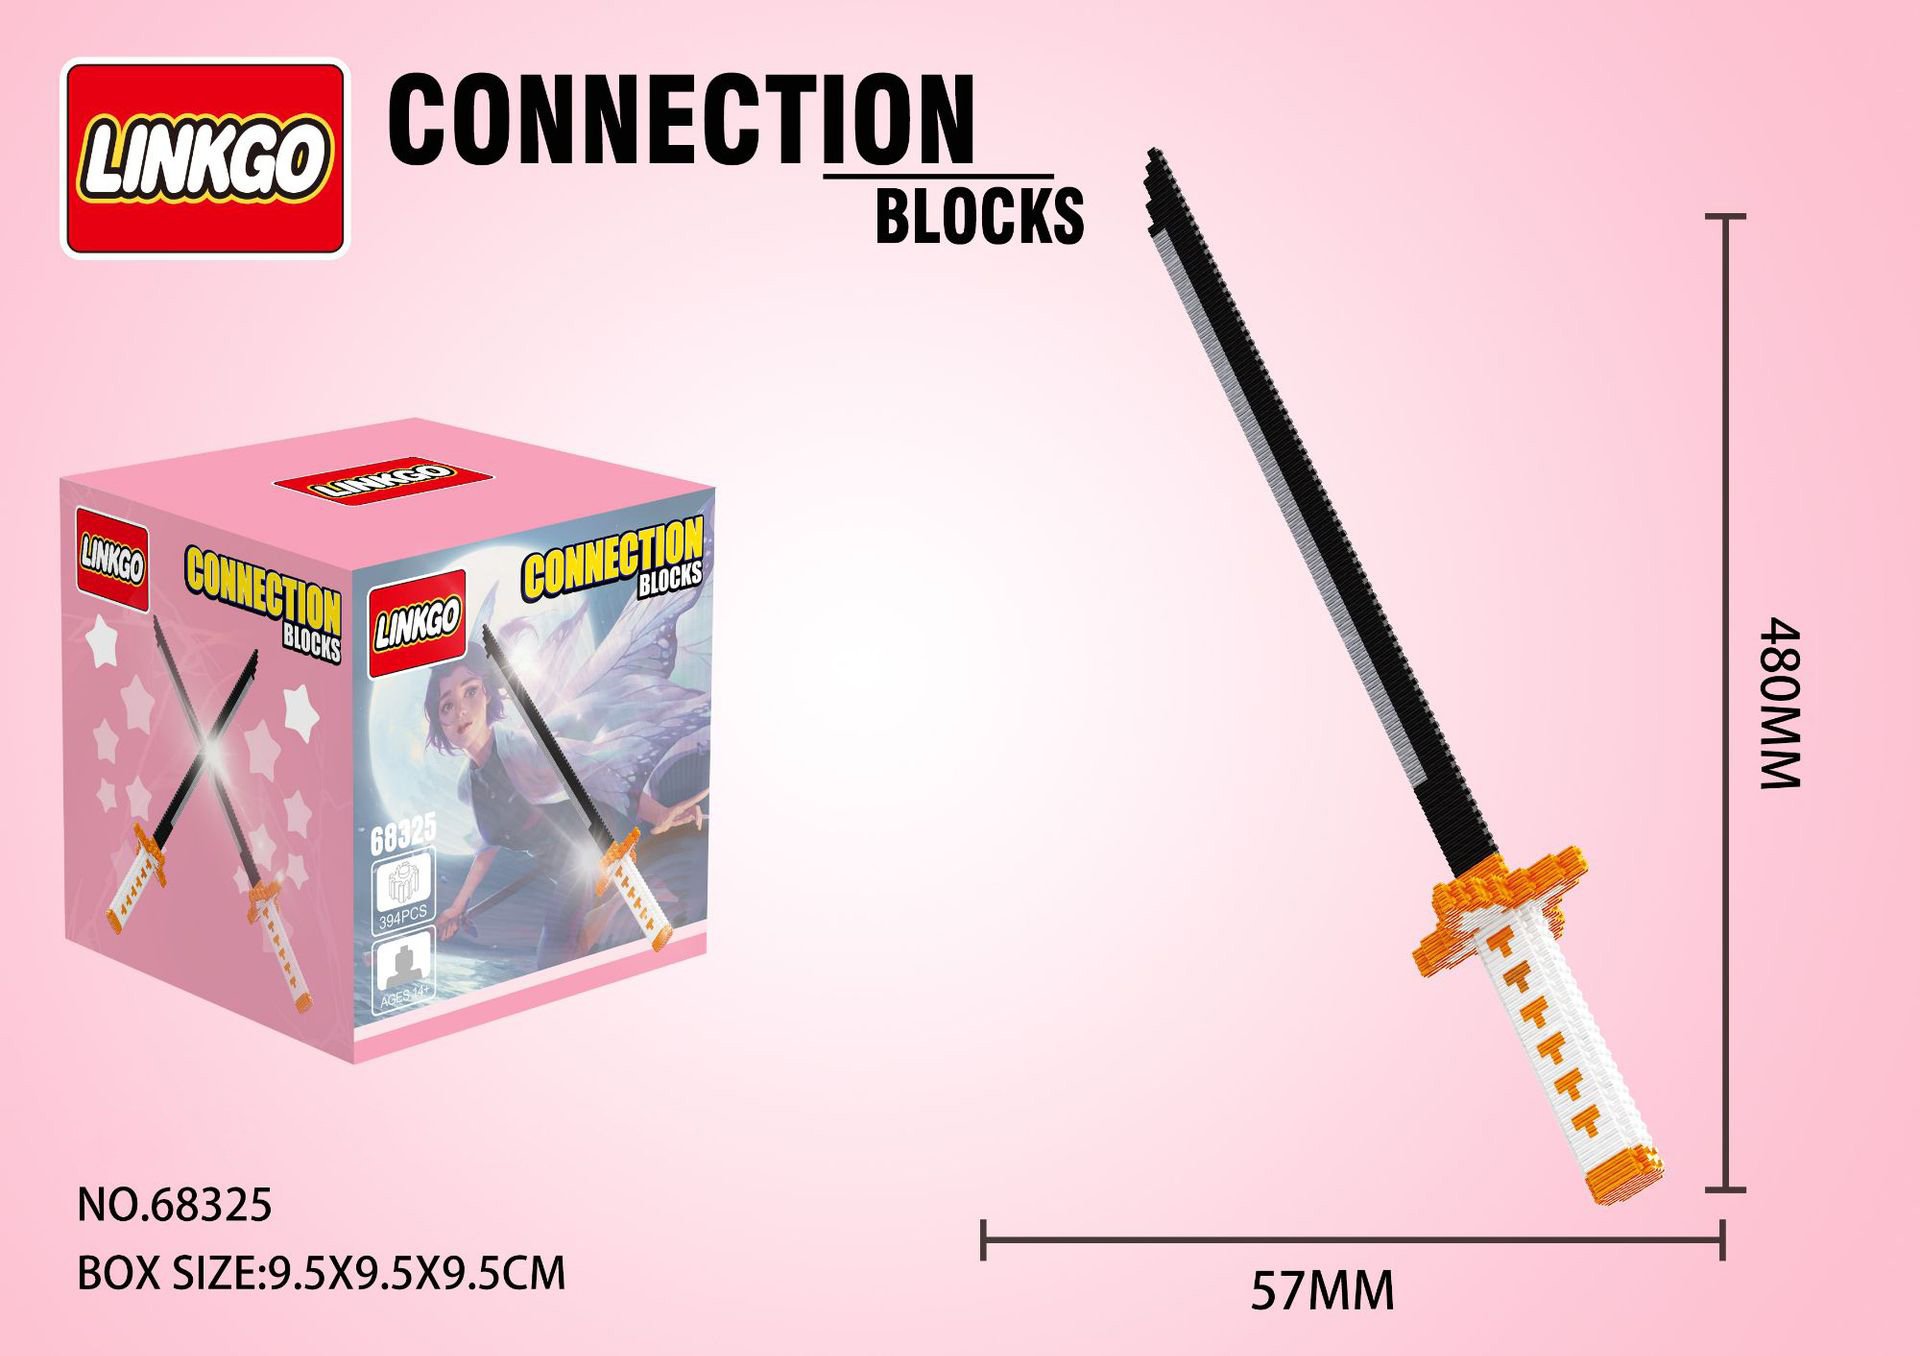 Đồ Chơi Lắp Ráp Kiểu LEGO Mô Hình Katana Của Kiếm Sư Roronoa Zoro Trong ONE PIECE Vua Hải Tặc Với 230+ PCS